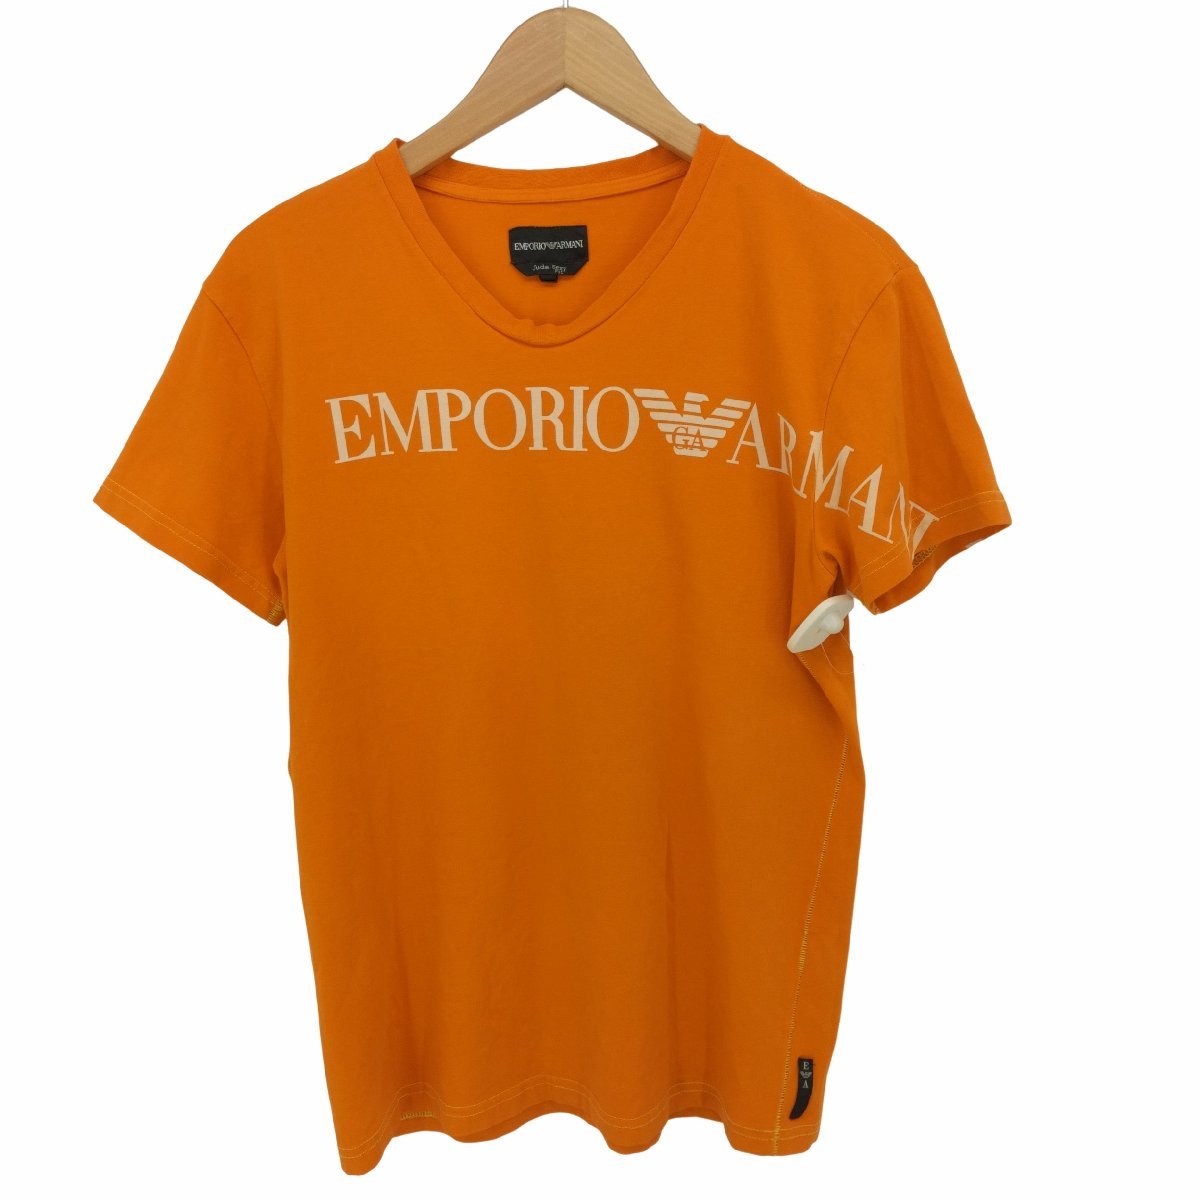 EMPORIO ARMANI(エンポリオアルマーニ) ロゴプリント 半袖 S/S Tシャツ メンズ im 中古 古着 0824_画像1